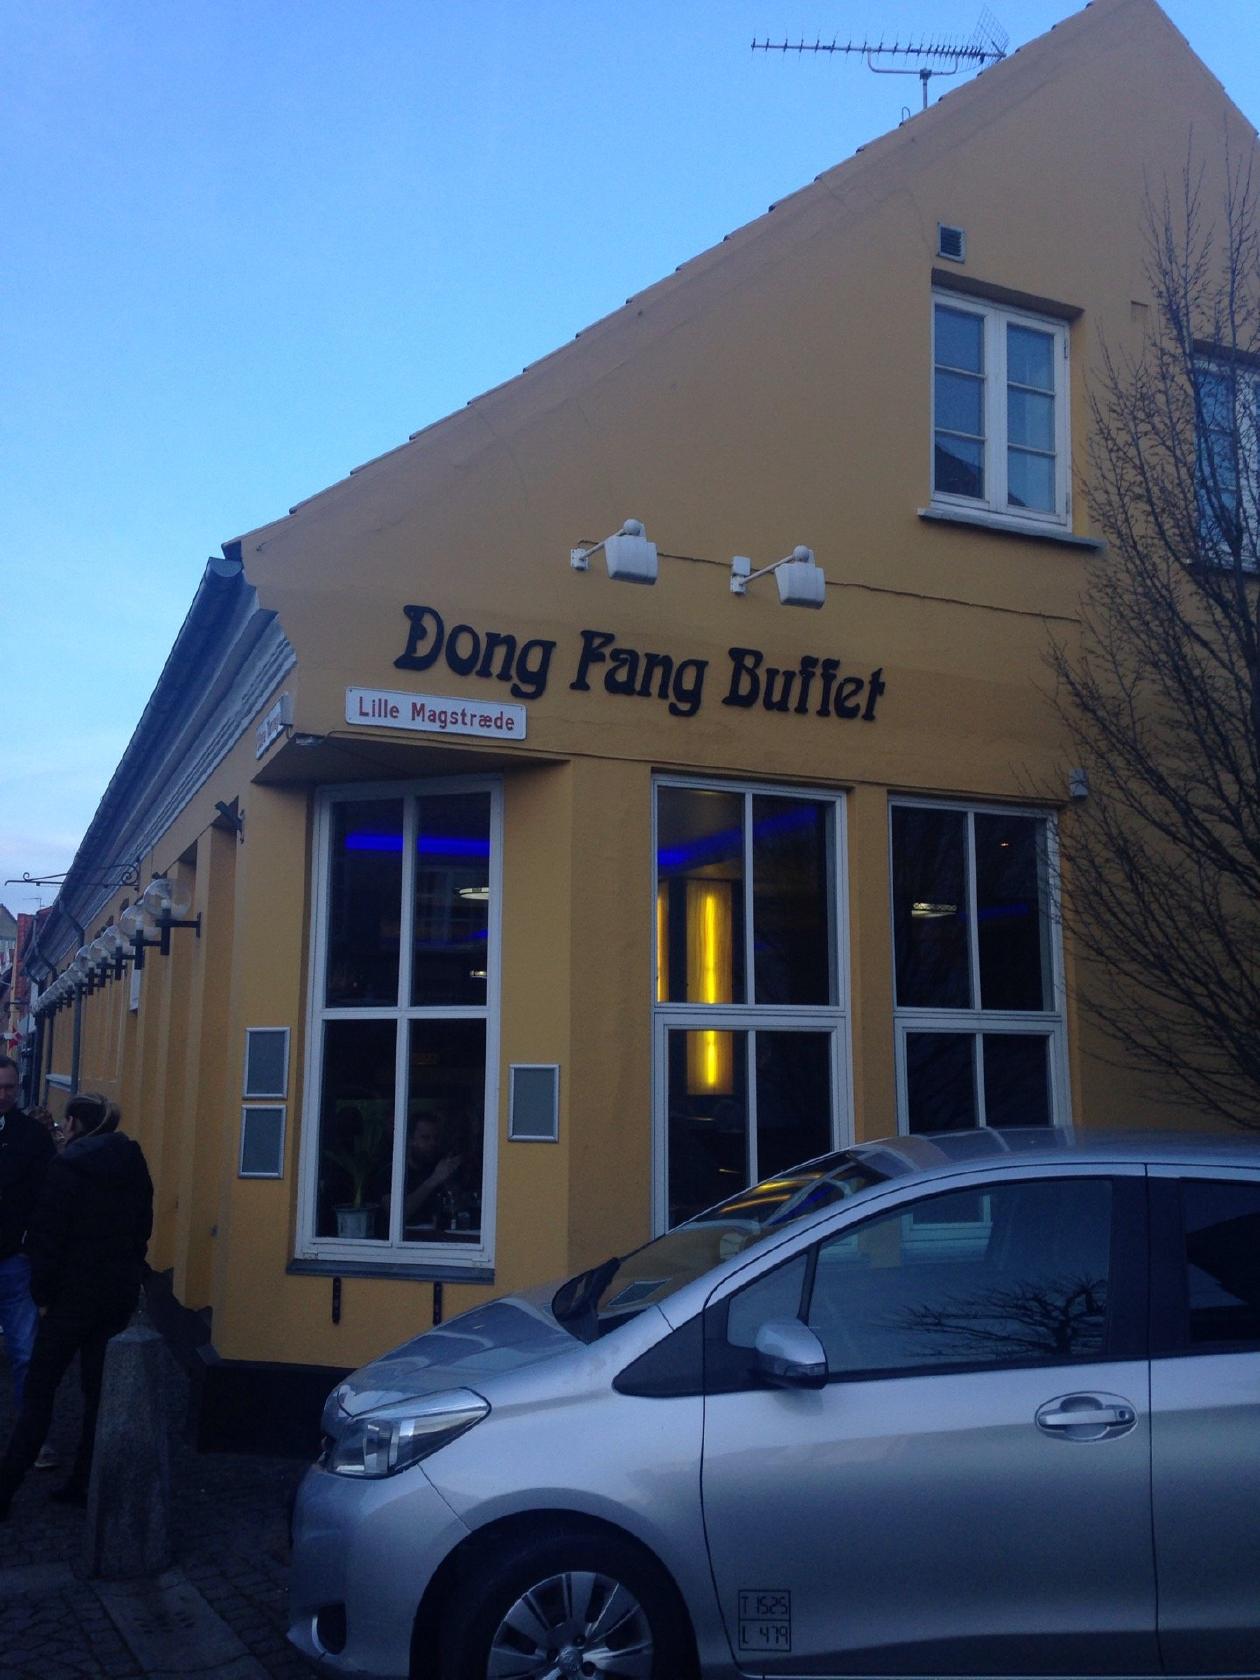 Dong restaurant, Rønne de restaurant